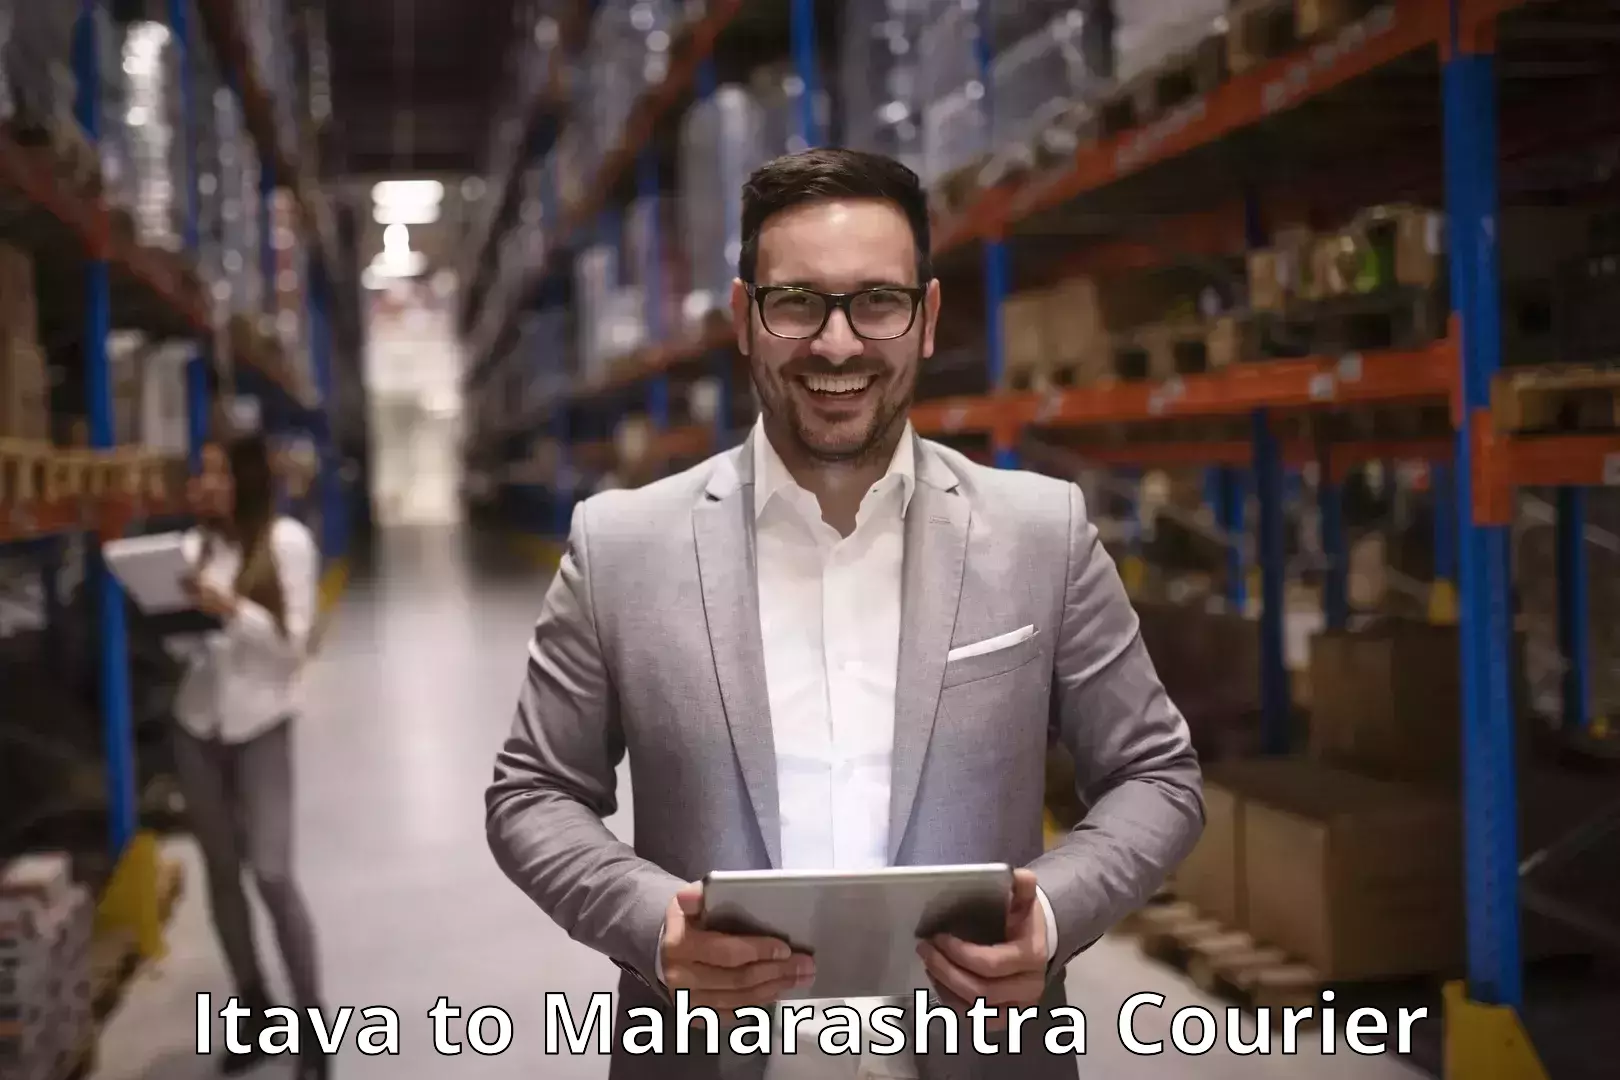 Courier service efficiency Itava to Maharashtra